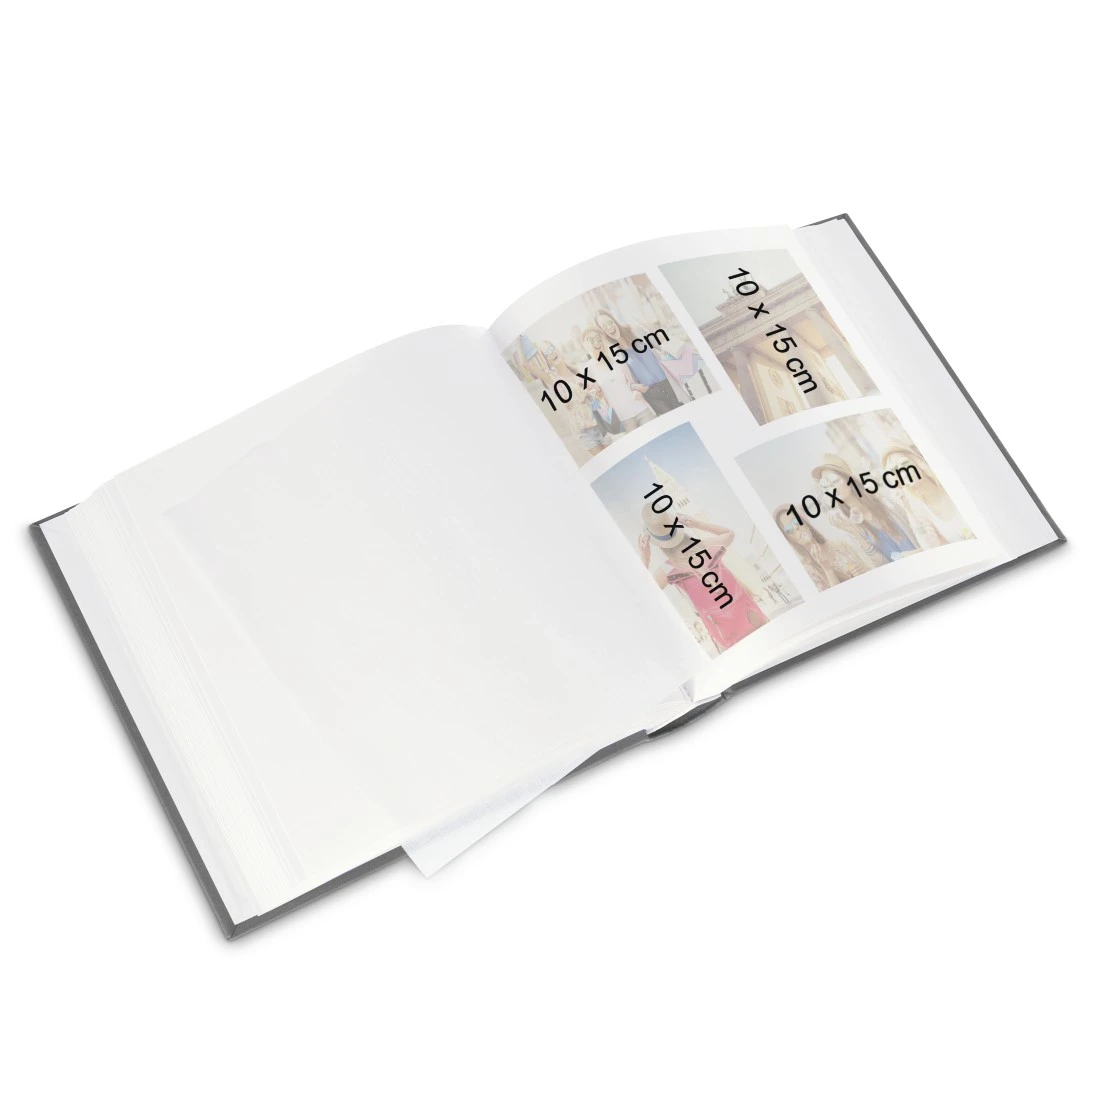 Hama Album photo grand format Londres, 30x30 cm, 80 pages blches